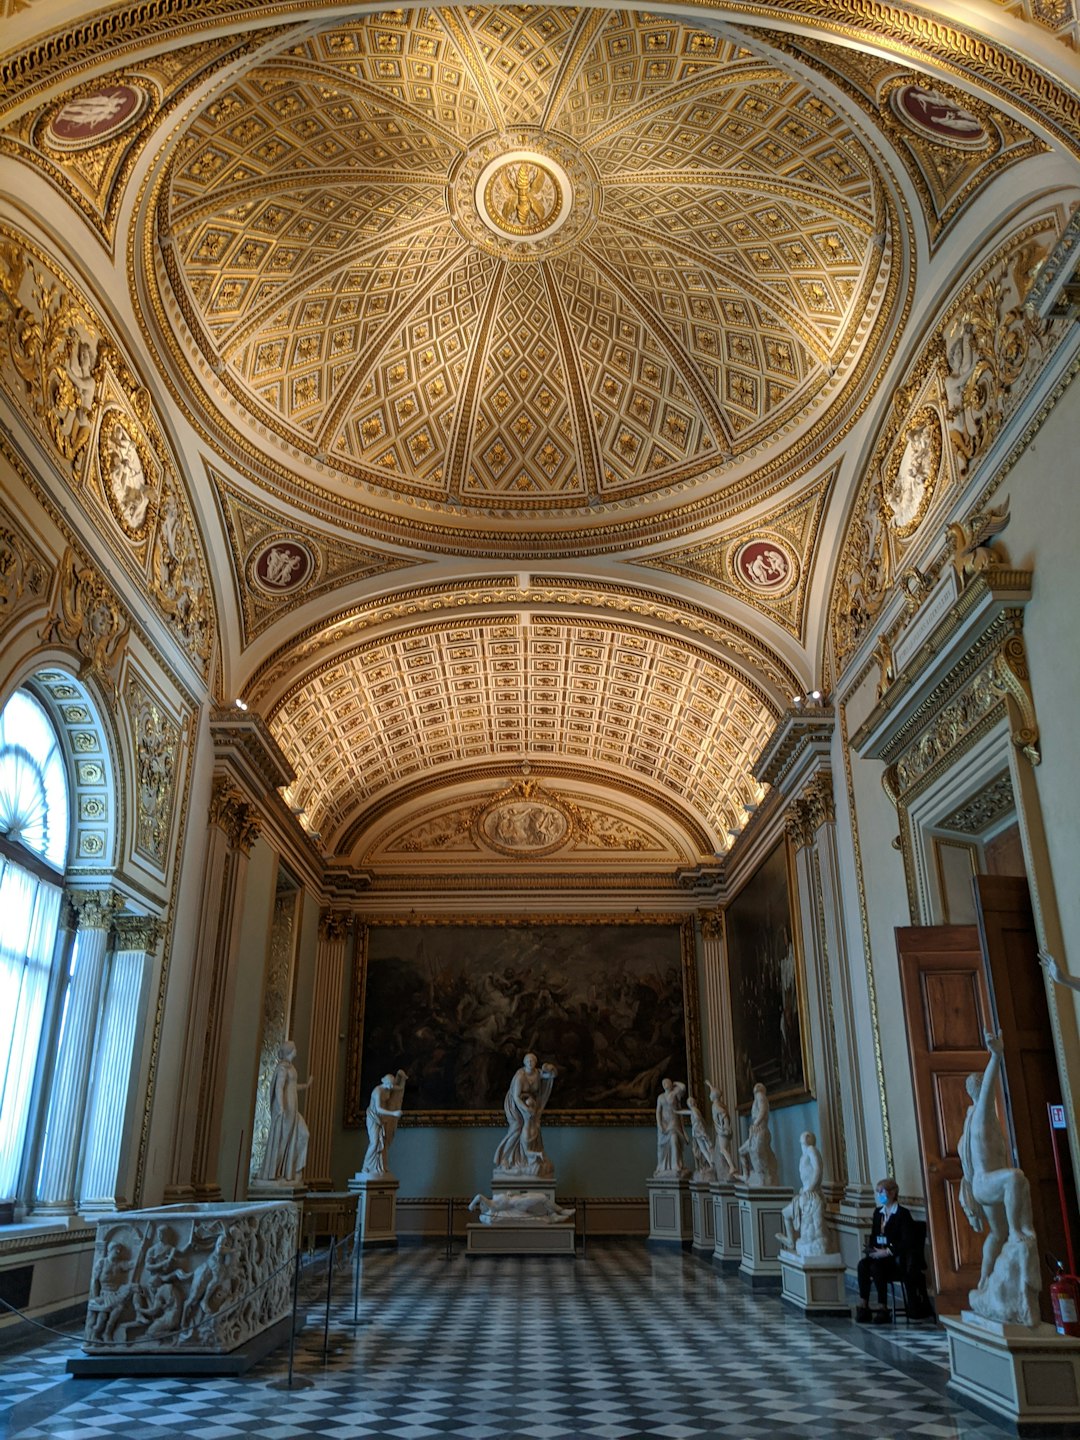 Basilica photo spot Uffizi Gallery Firenze